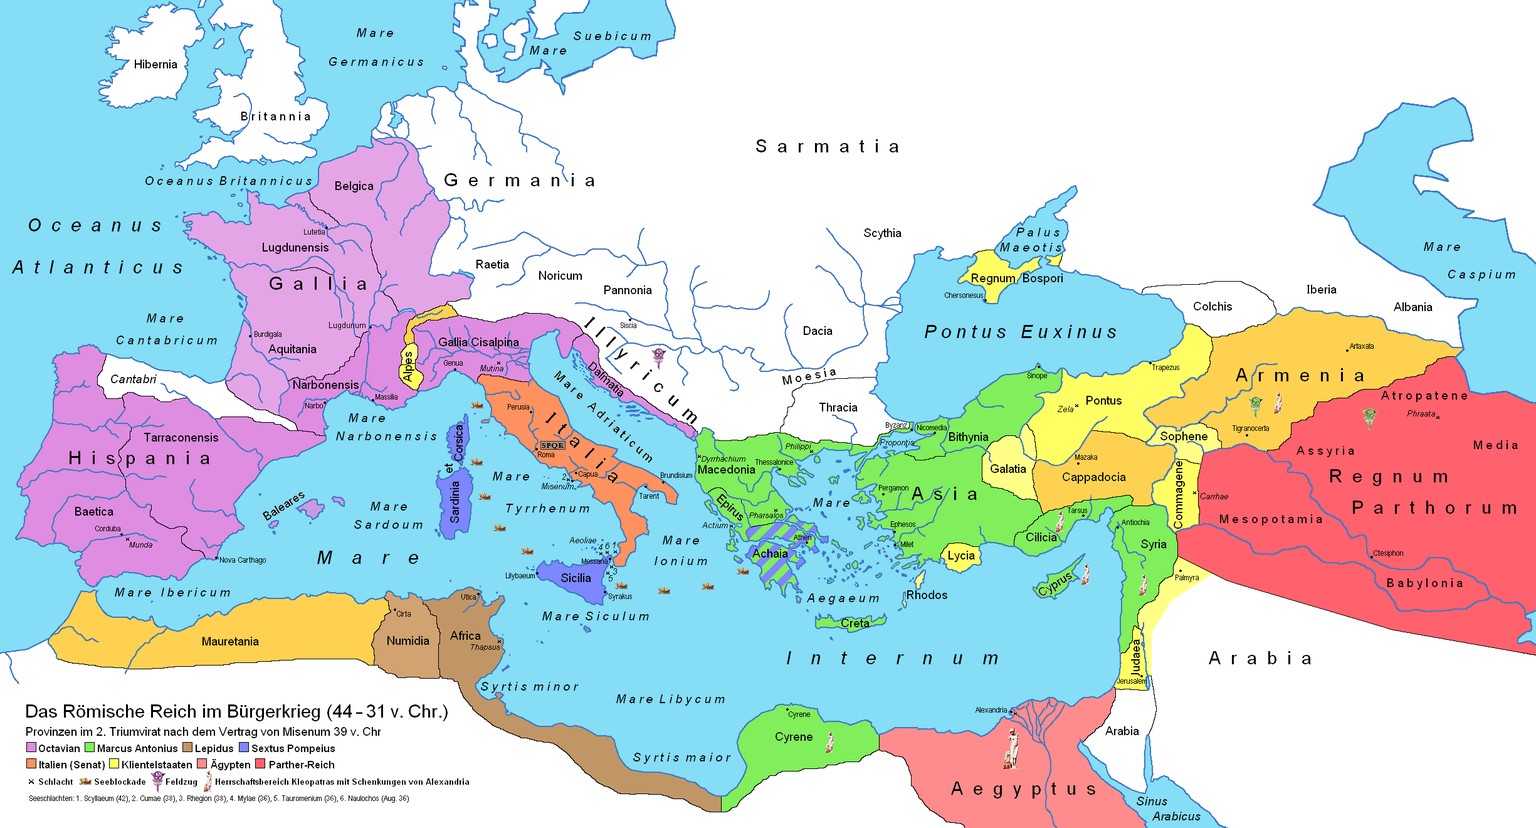 Nach Cäsars Ermordung kämpften Antonius und Cäsars Adoptivsohn Octavian (der spätere Kaiser Augustus) erst gemeinsam gegen die Heere der Cäsarmörder Brutus und Cassius. Als sie sie in der Schlacht bei Philippi schlugen, war ein für alle mal klar, dass Rom nie wieder eine Rebublik werden würde. Die Frage war nur noch, wer sein nächster Alleinherrscher werden würde: Antonius (grüner Bereich in der Karte) oder Octavian (violetter Bereich).